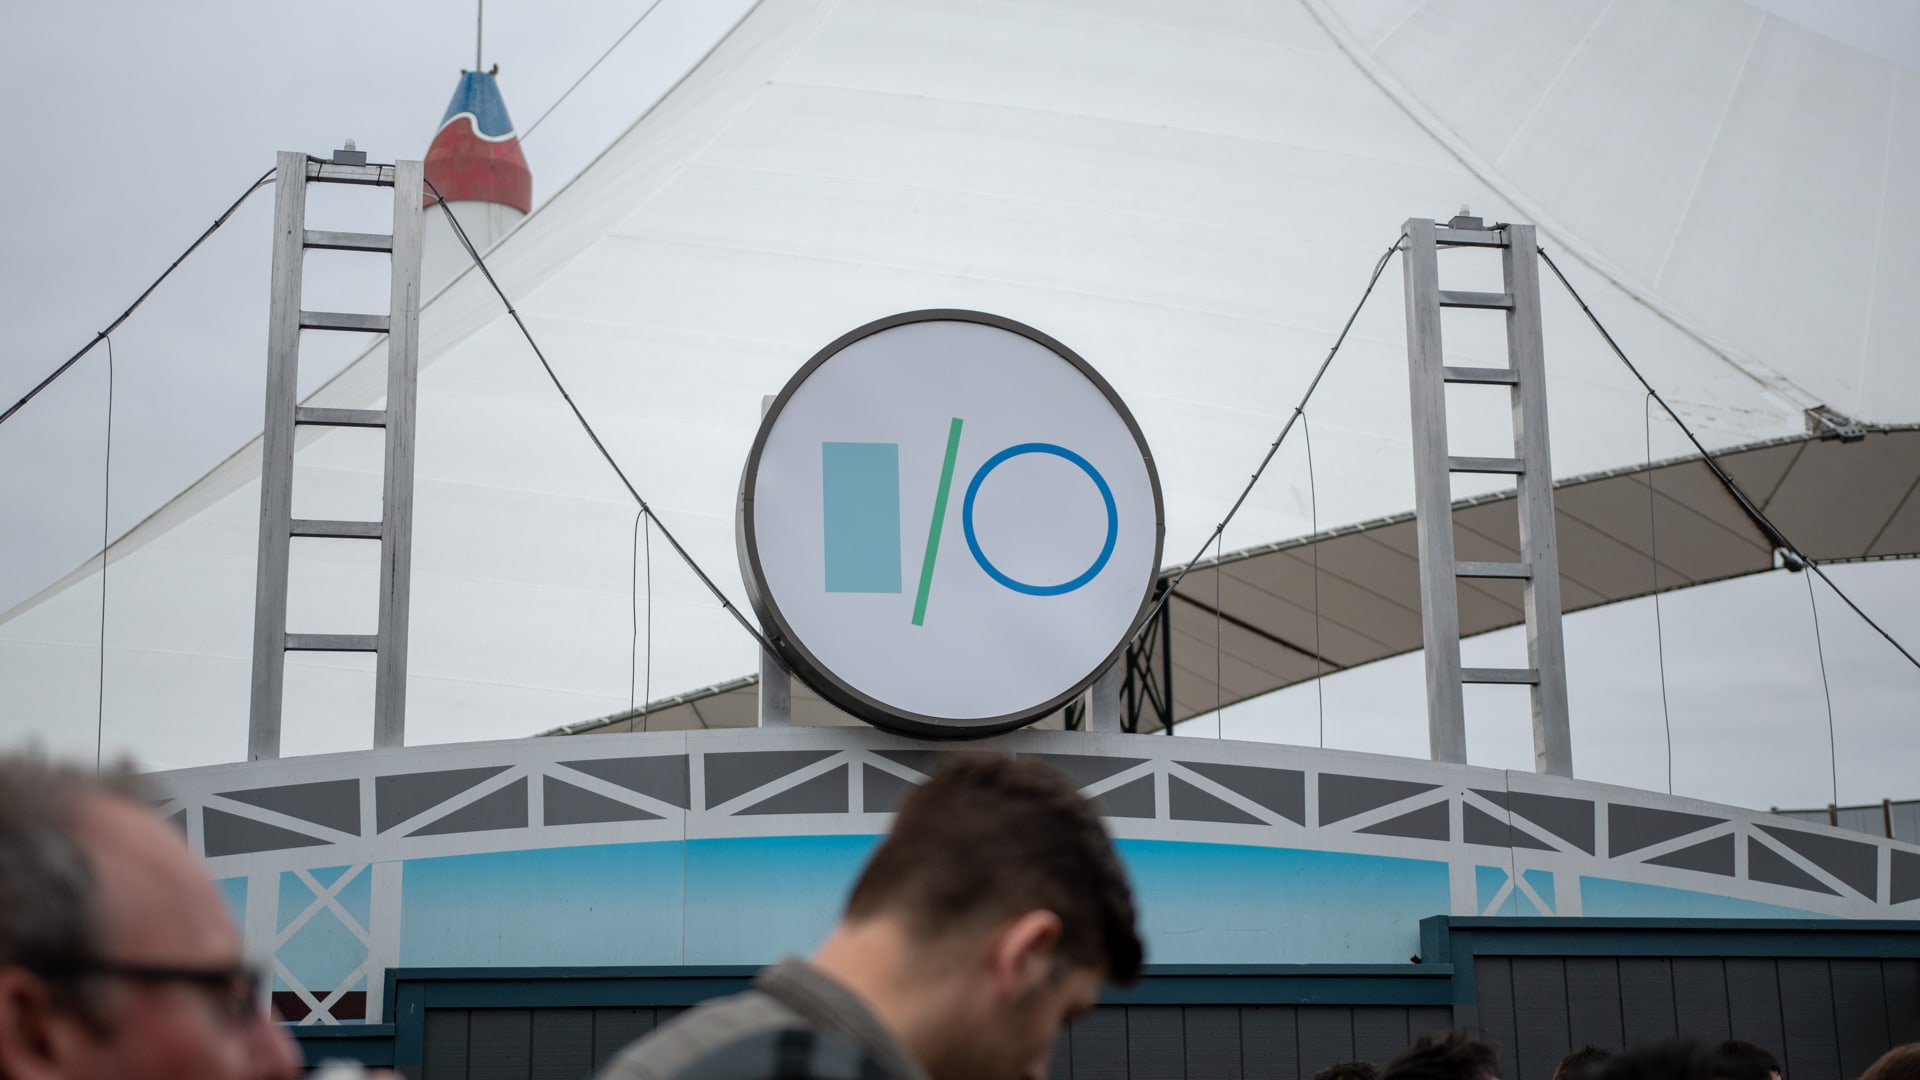 Google I/O 2019 Signage